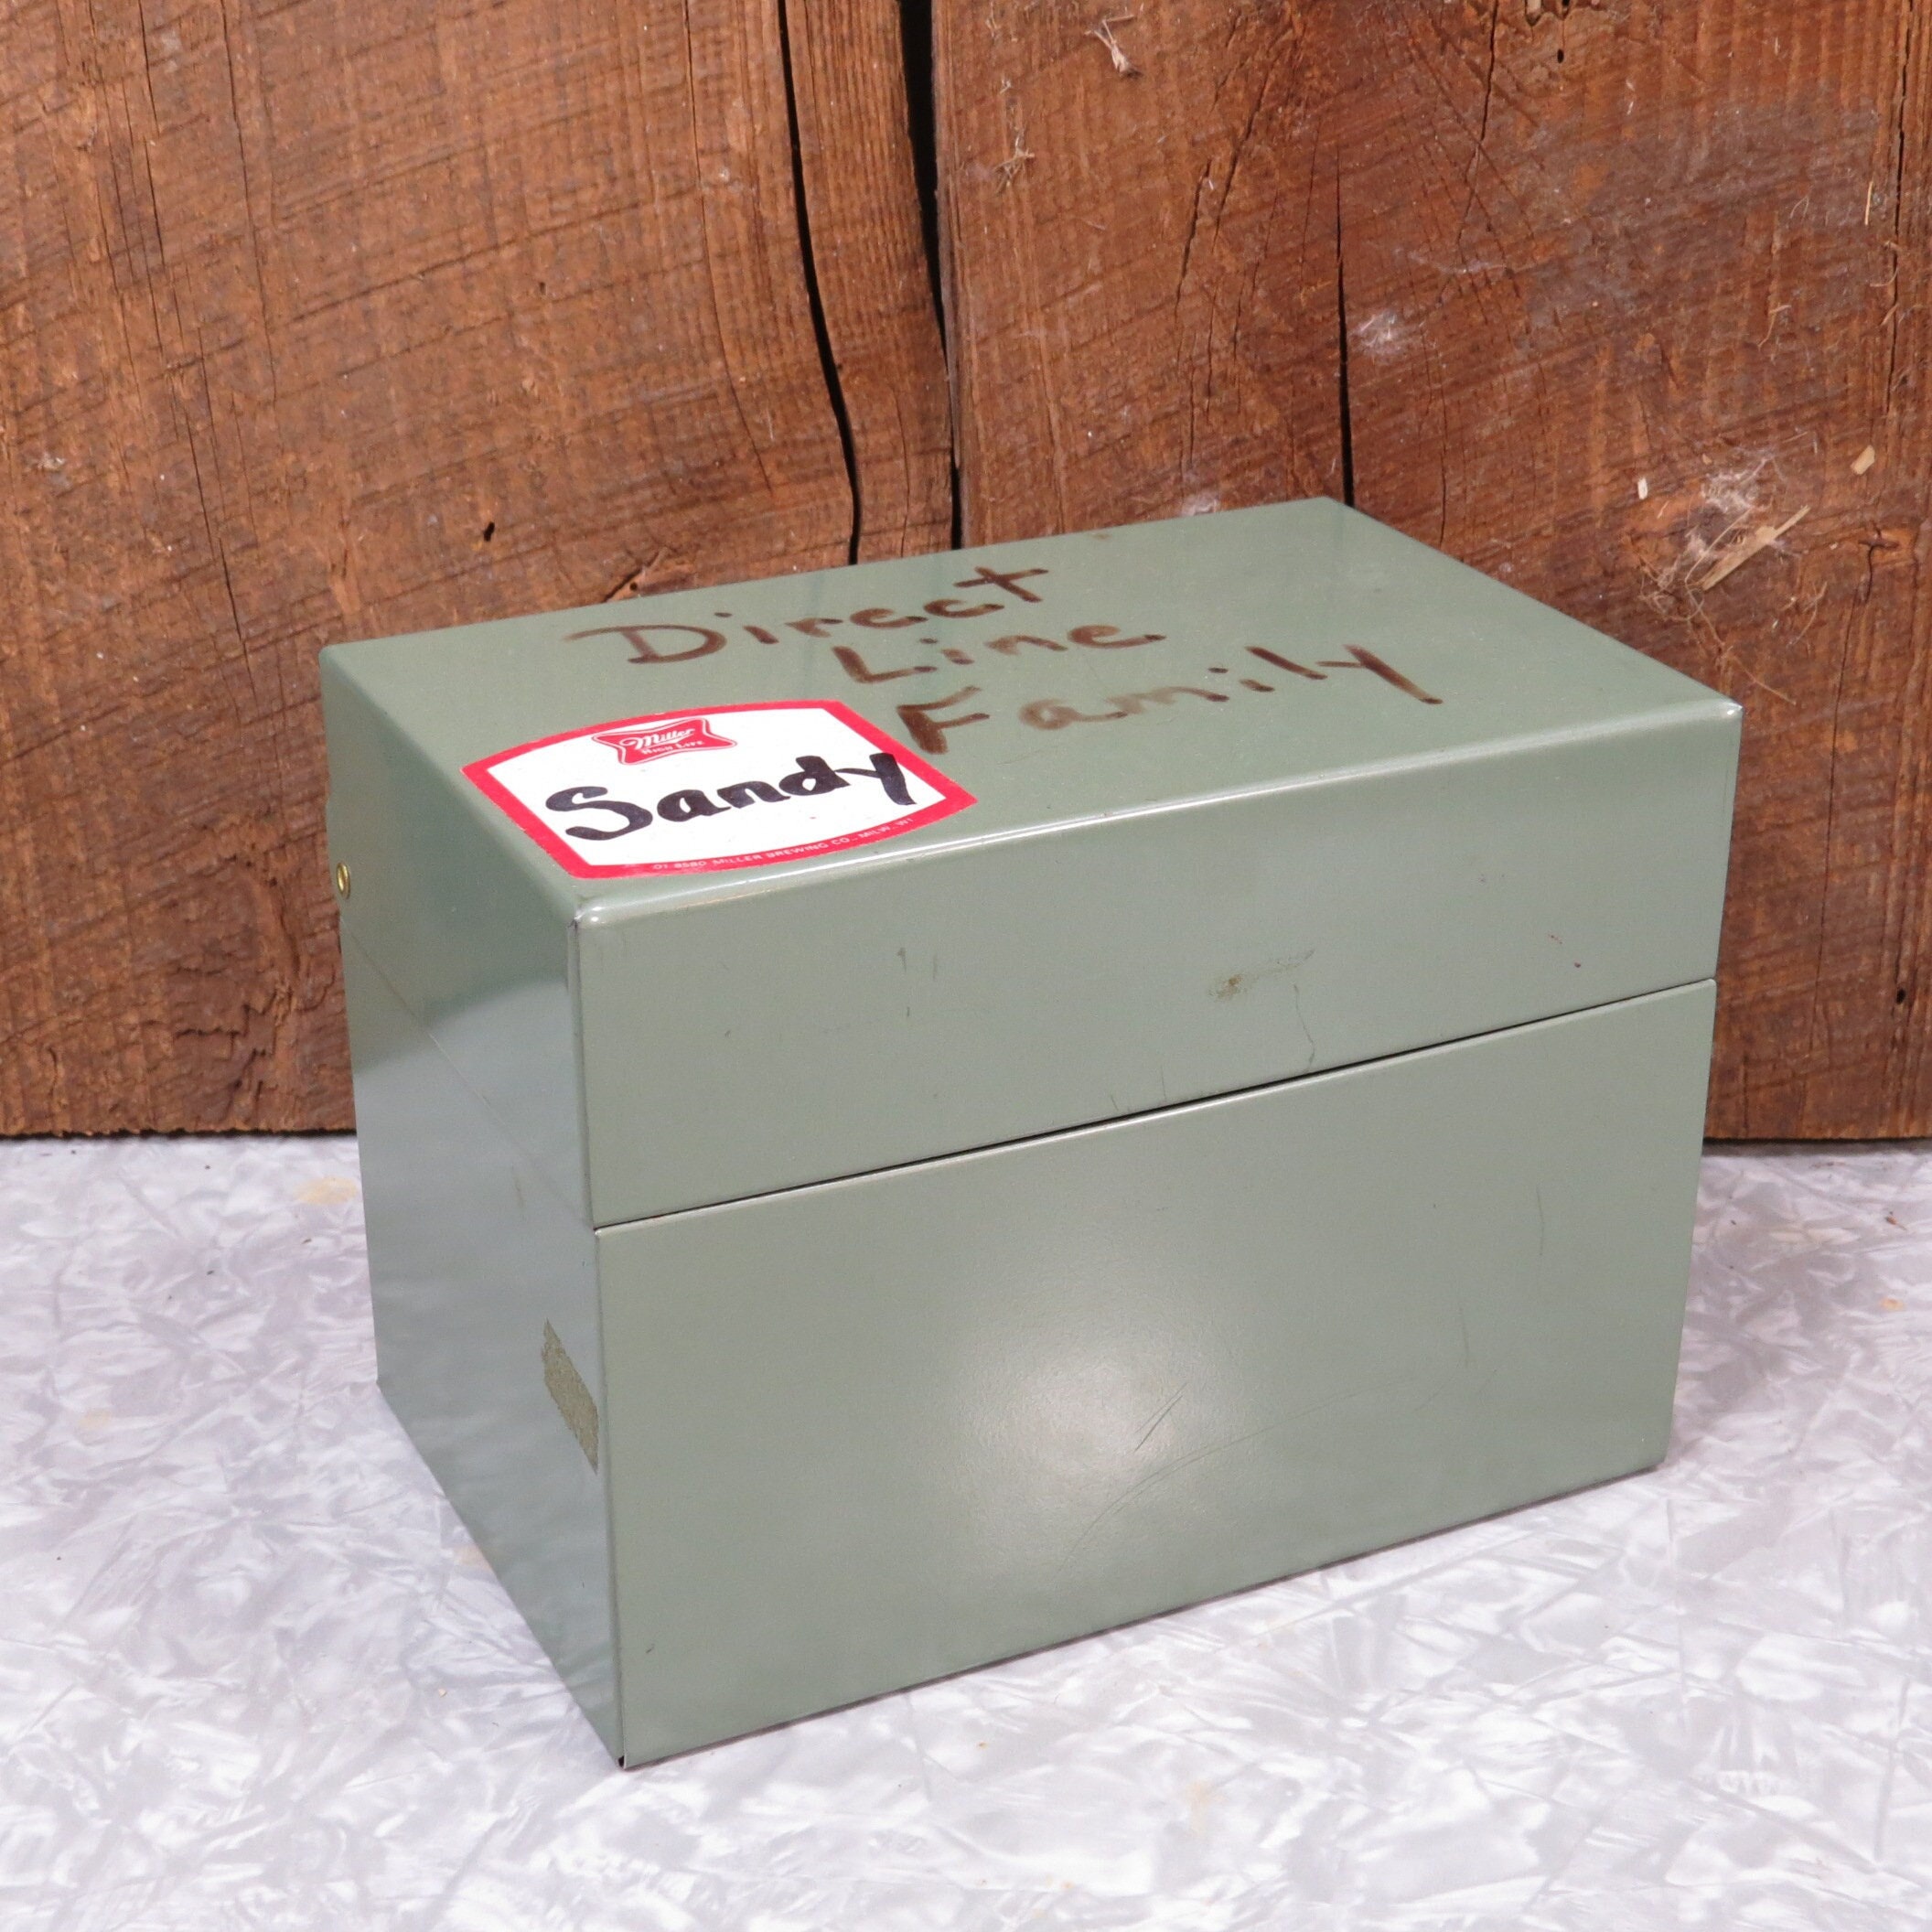 Vintage Lit-Ning Index Card File Box Metal Dark Green Color for Recipes